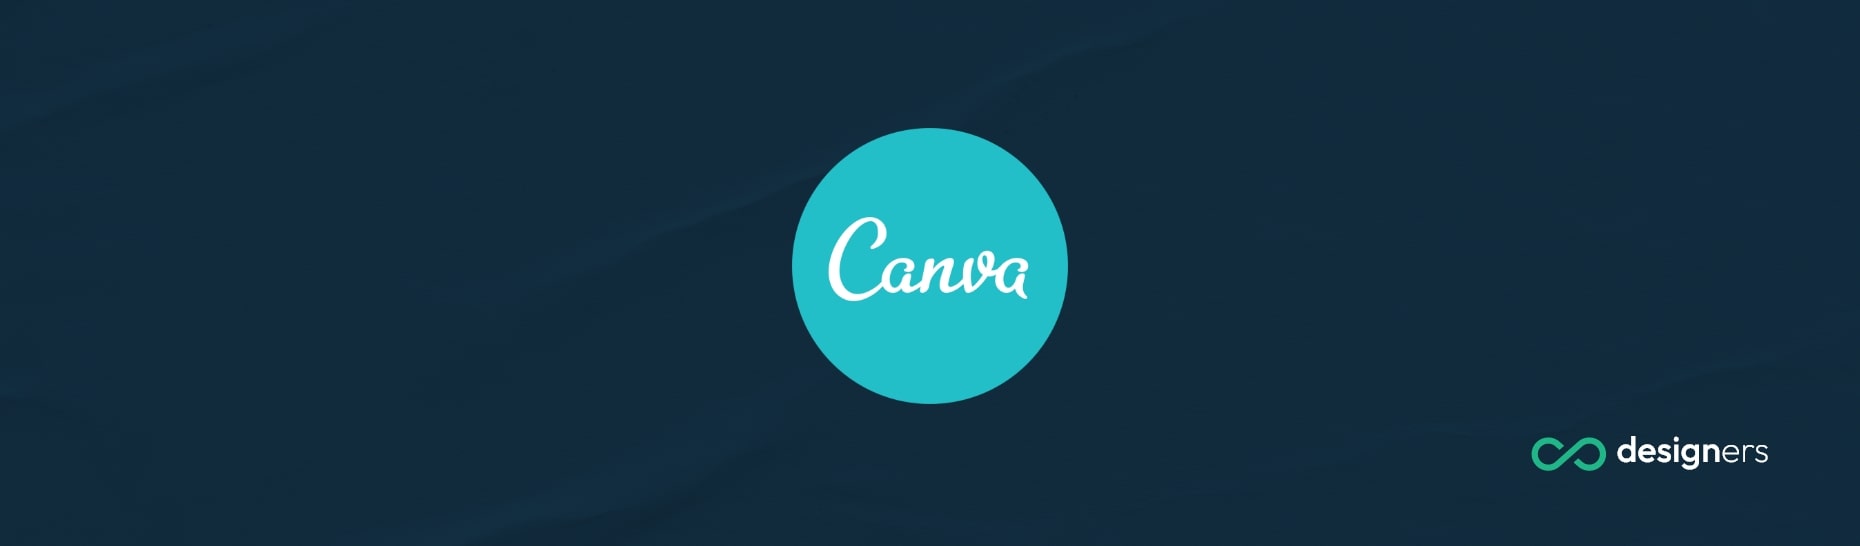 Can I Use Canva for Social Media Marketing?